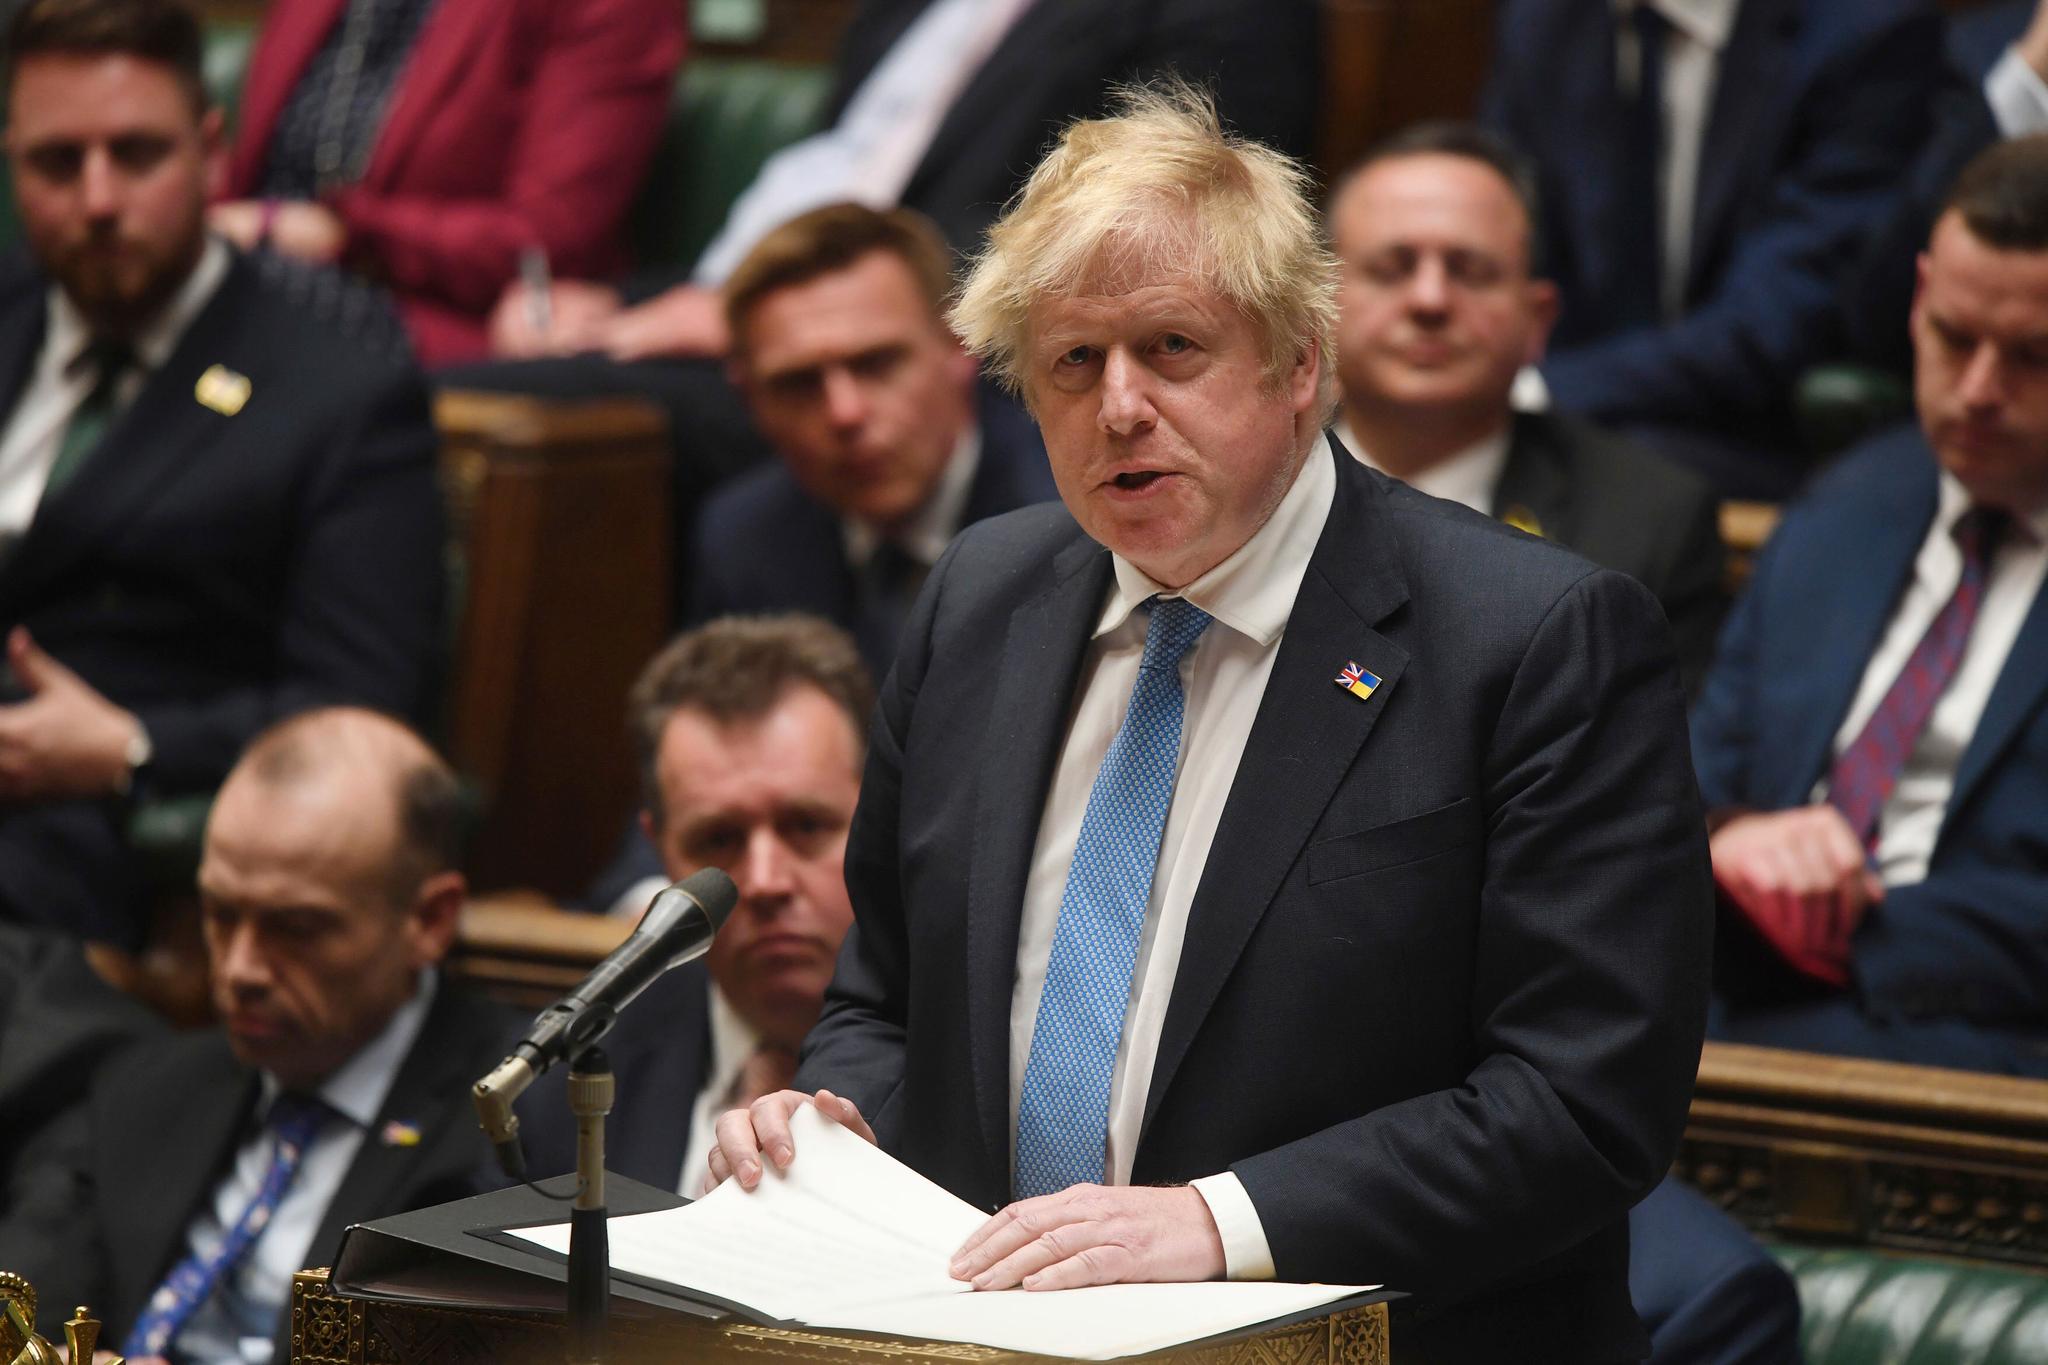 – Åpenbart er det uakseptabelt at noen gjør slikt på en arbeidsplass, sa statsminister Boris Johnson om partifellens oppførsel. 